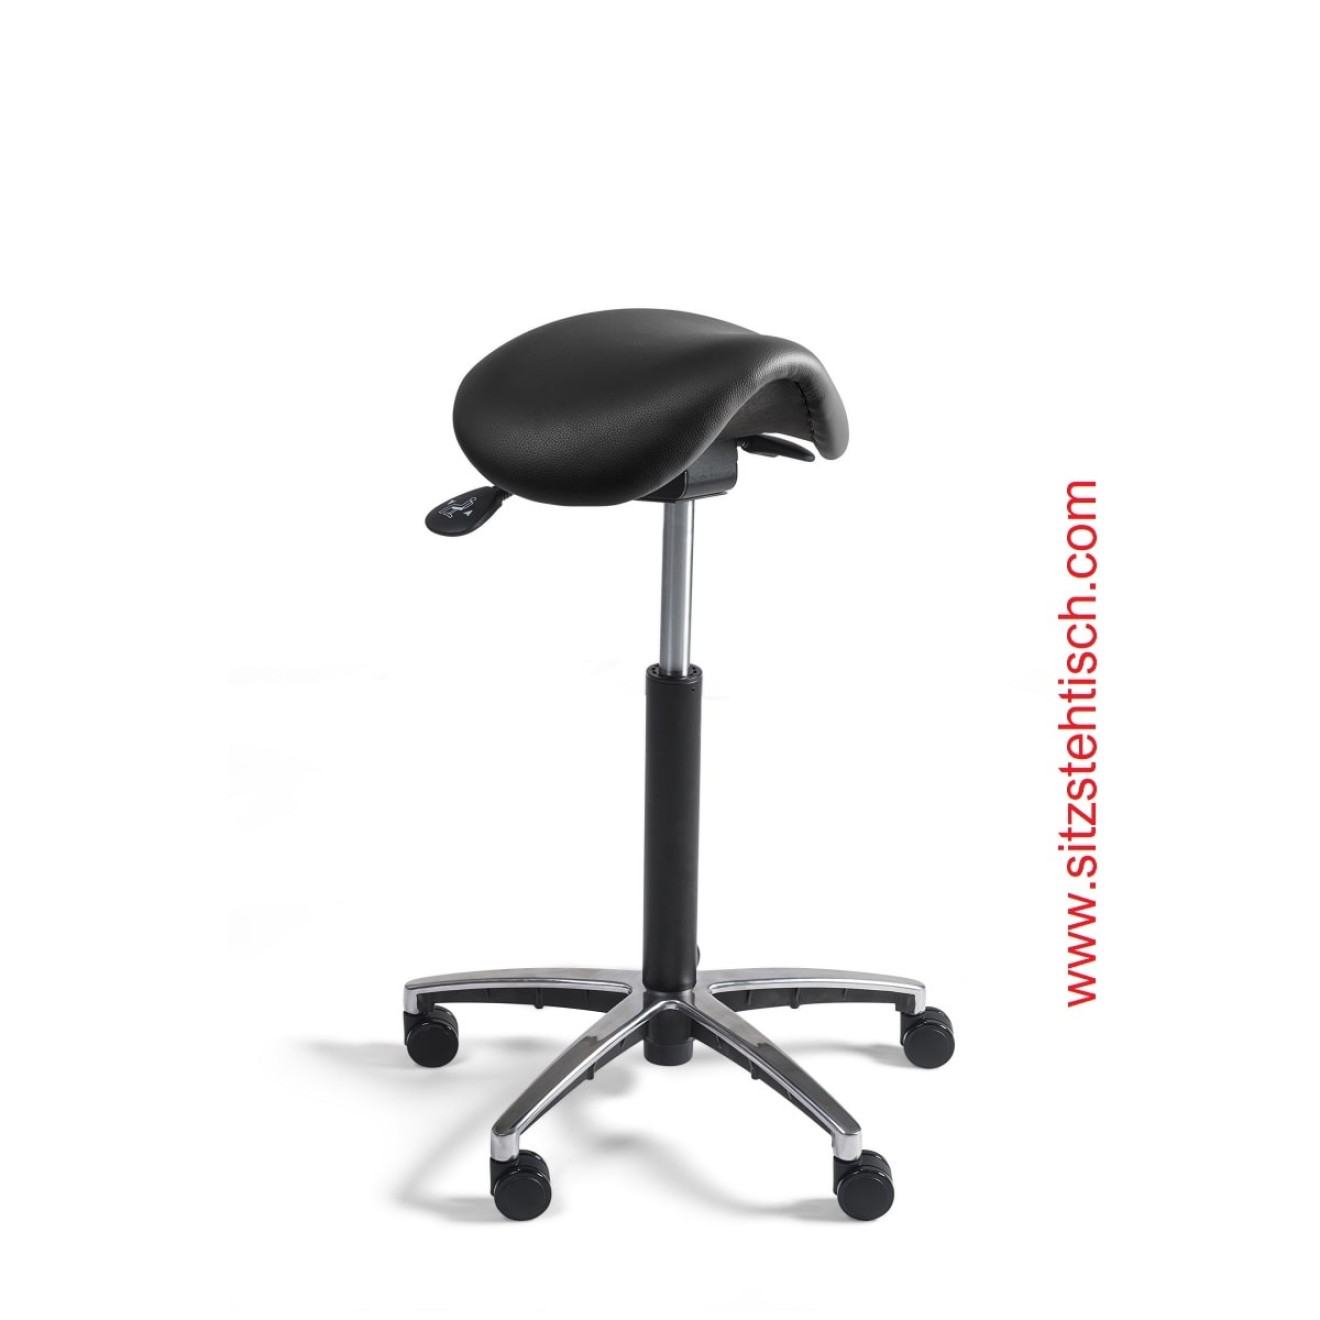 Sattelhocker mit schmalem Sitz - Sitzhöhen- und Sitzwinkelverstellung - Bezug Kunstleder schwarz - Belastbarkeit bis 125 kg - 5 Jahre Garantie - 103969